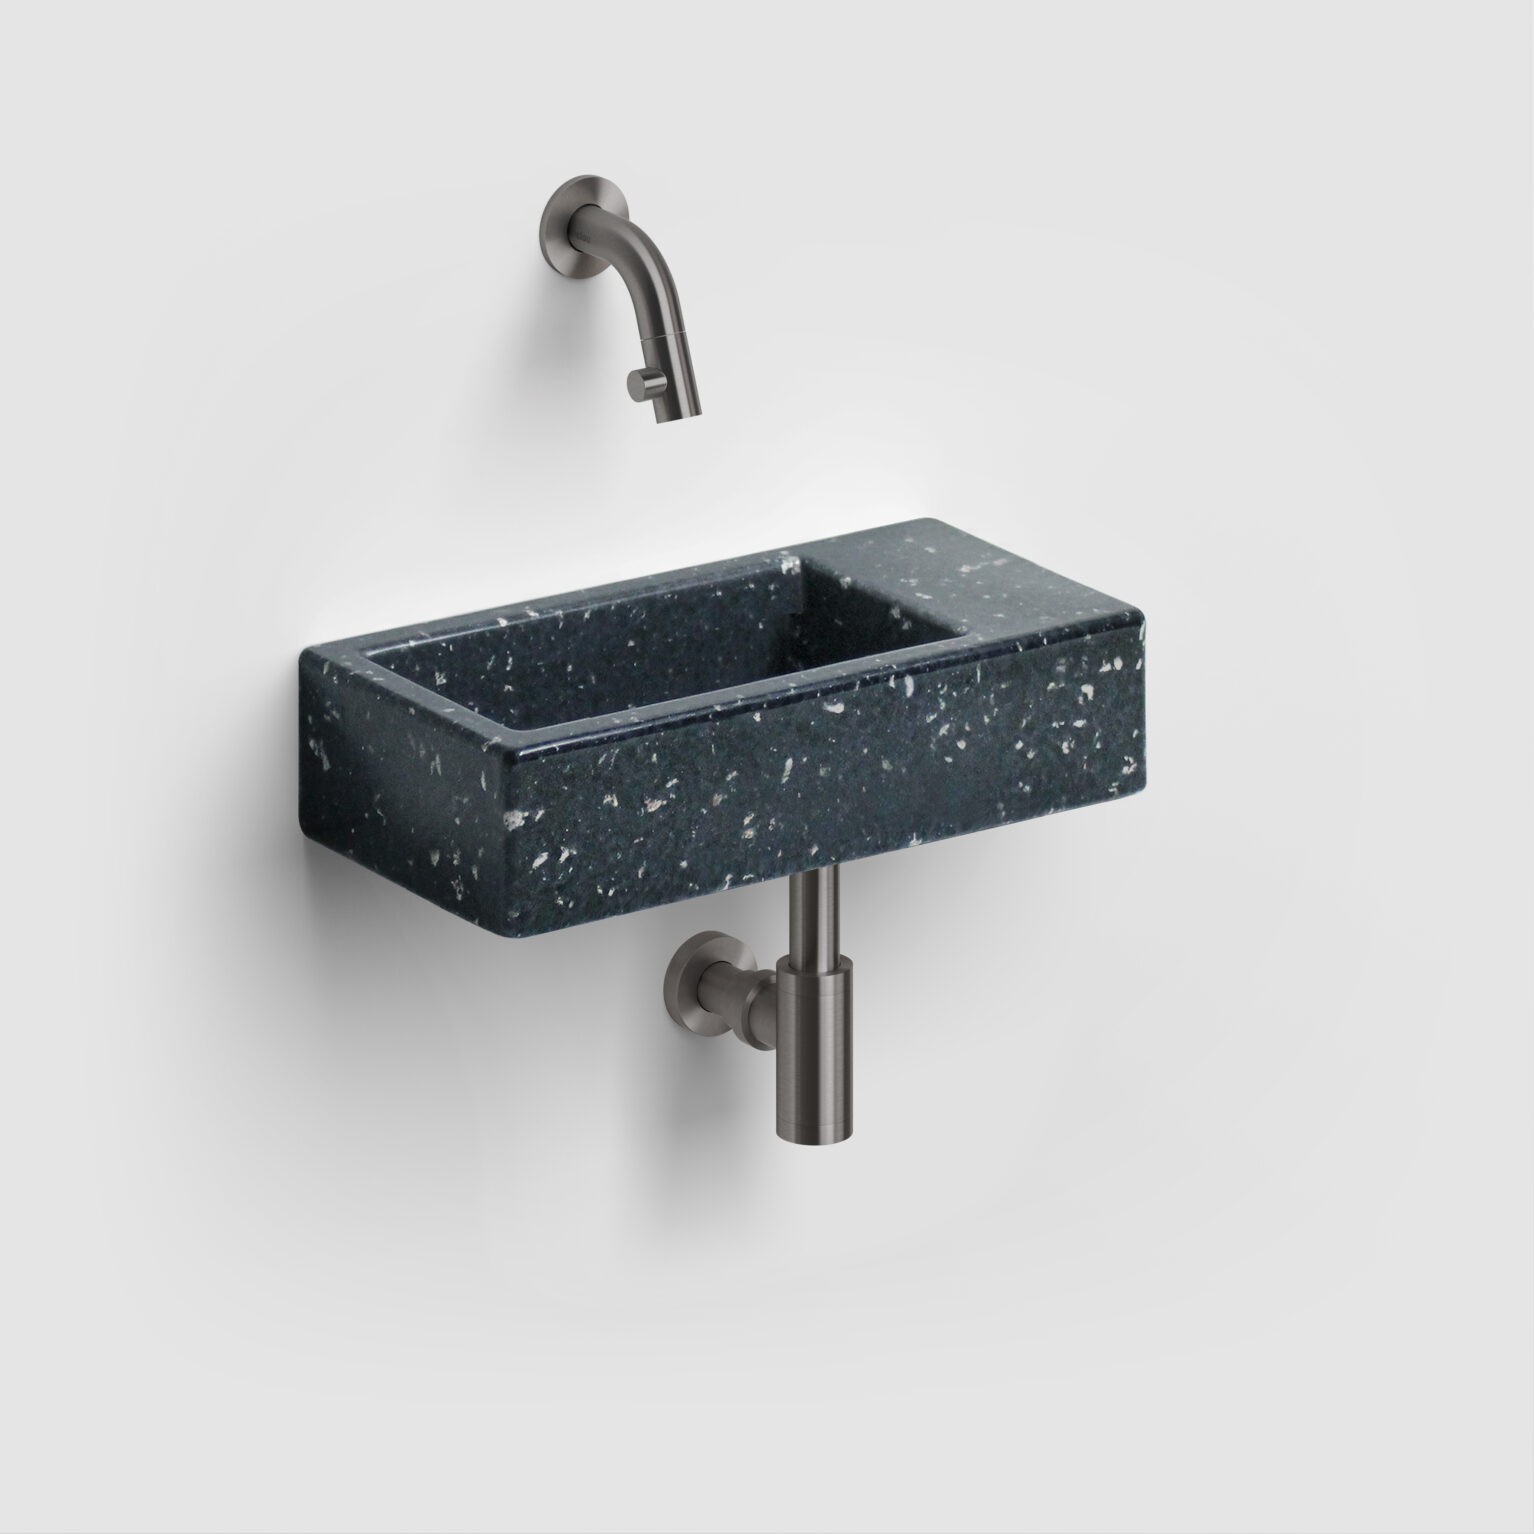 CL/03.03030 - Clou bath findings - Sanitair voor design badkamers